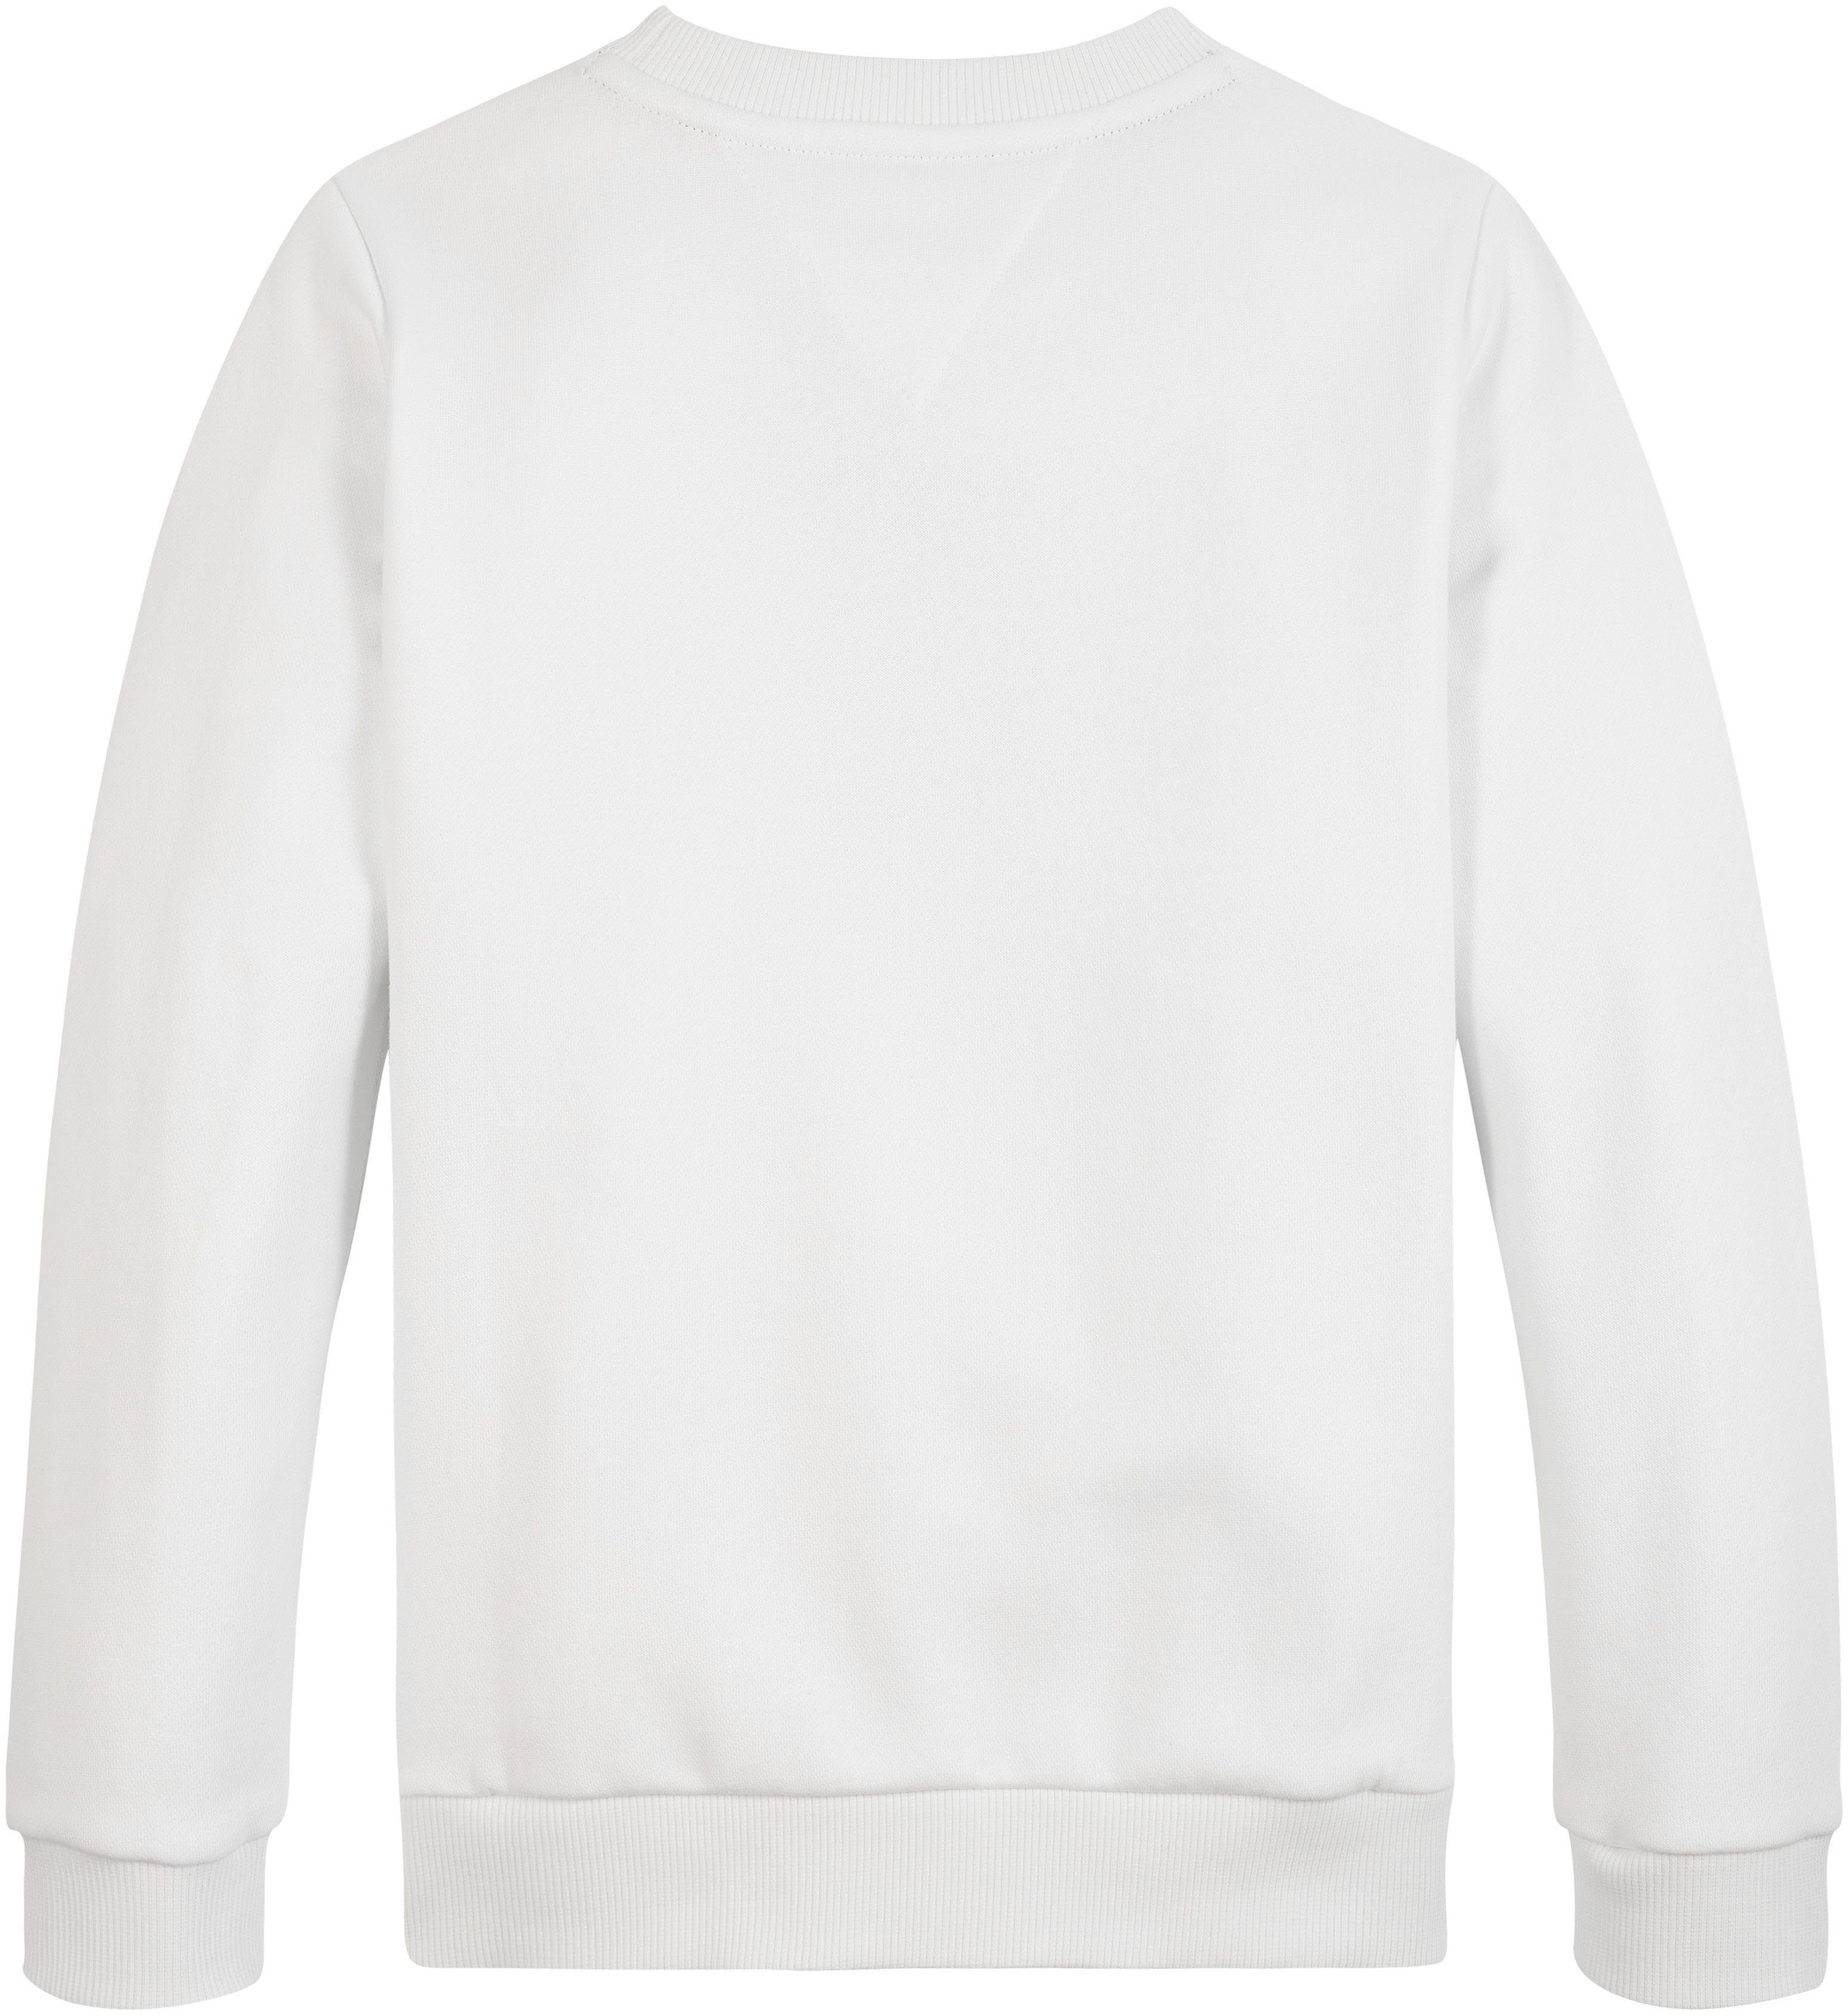 Sweatshirt großer SWEATSHIRT Logo-Schriftzug TH Ancient_White Hilfiger Tommy Hilfiger & mit LOGO Flag